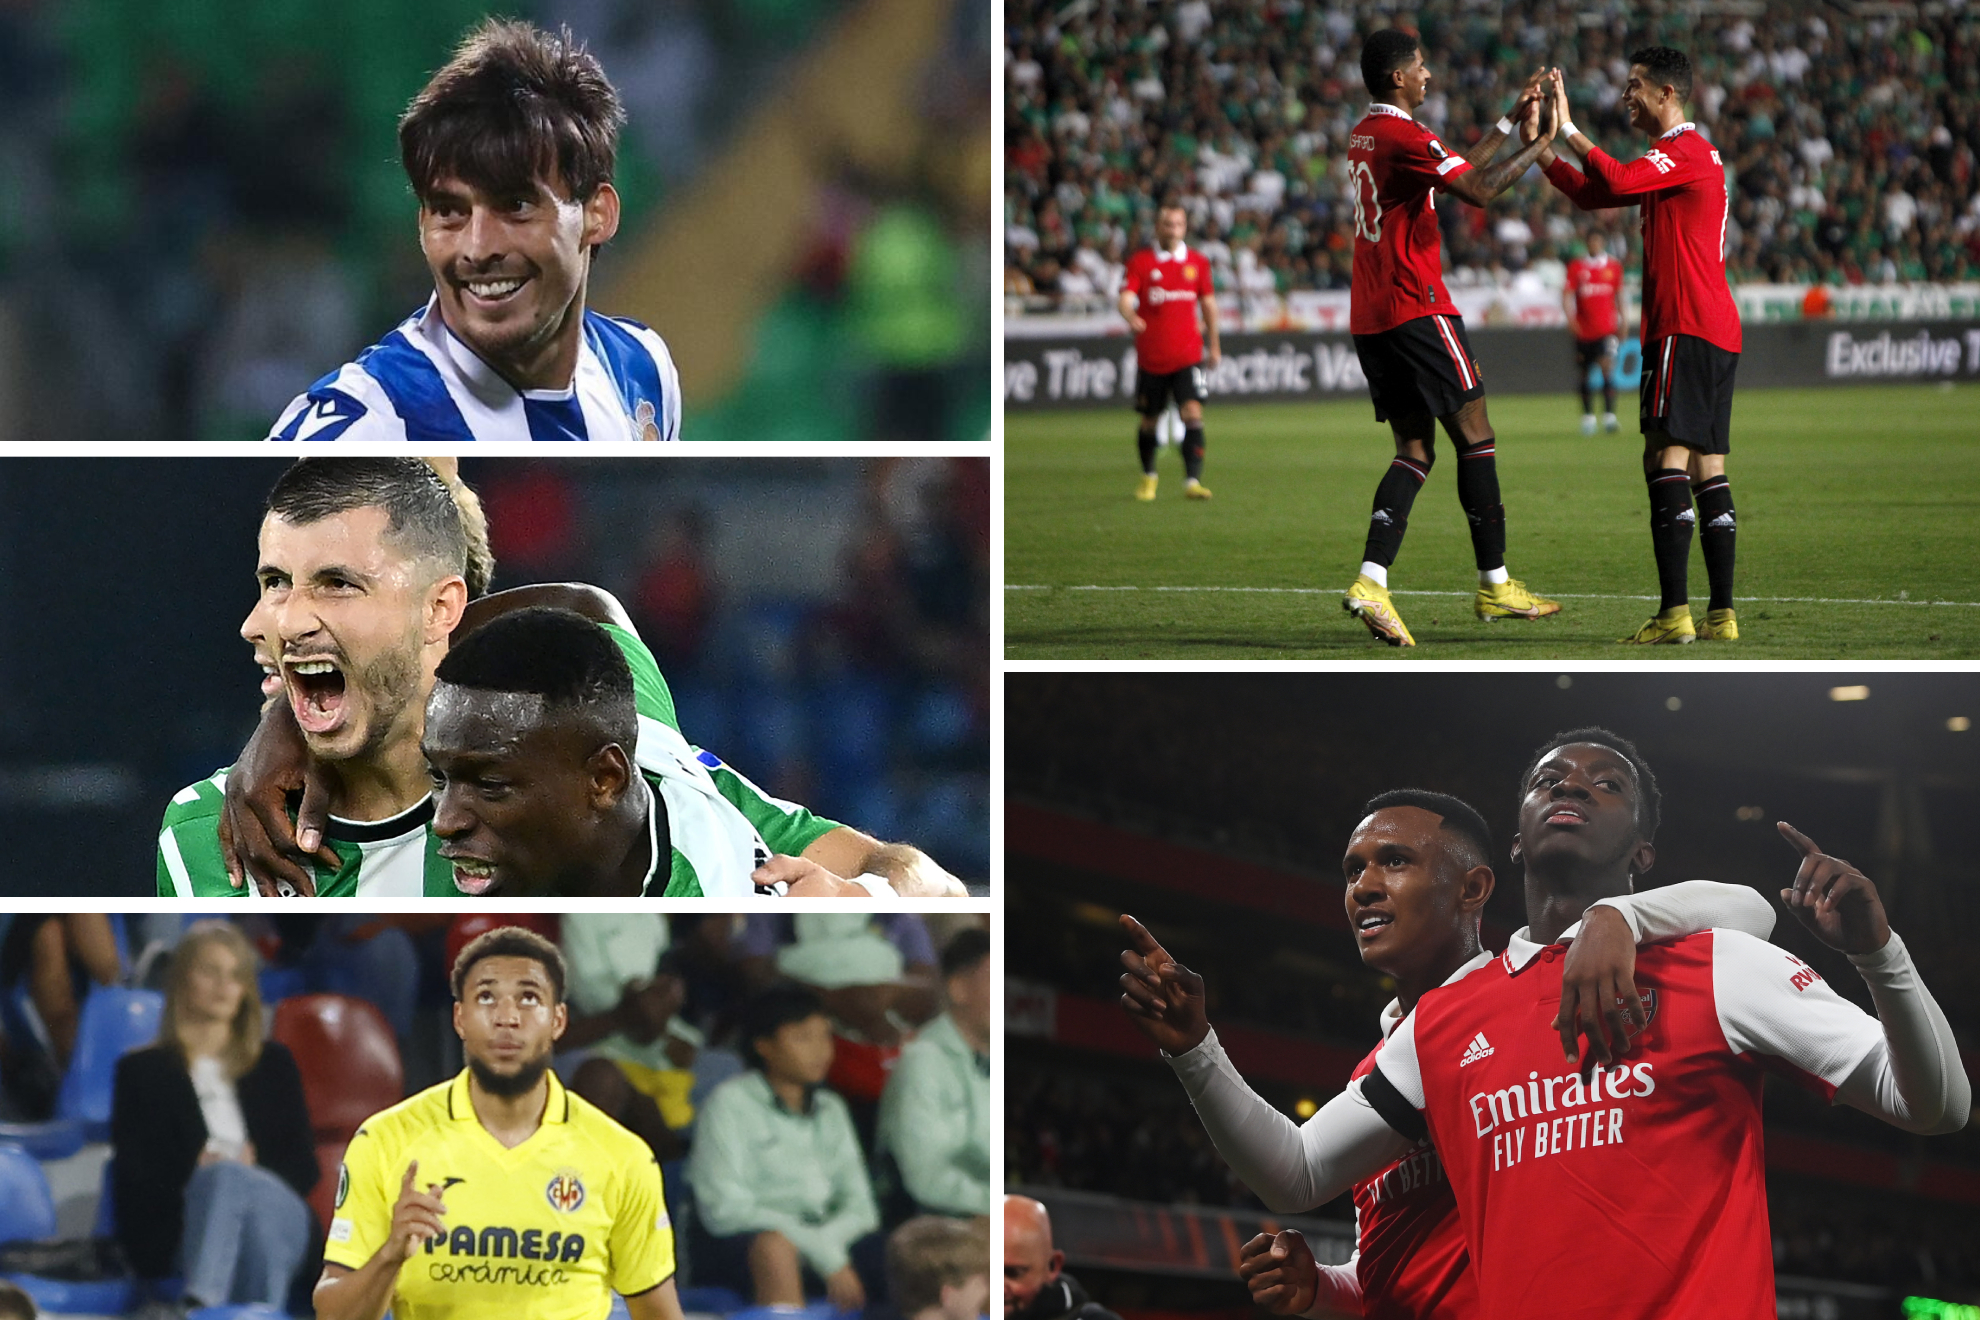 Las mejores imágenes de la jornada en Europa League y Conference: Golazos, cantadas, sorpresas...